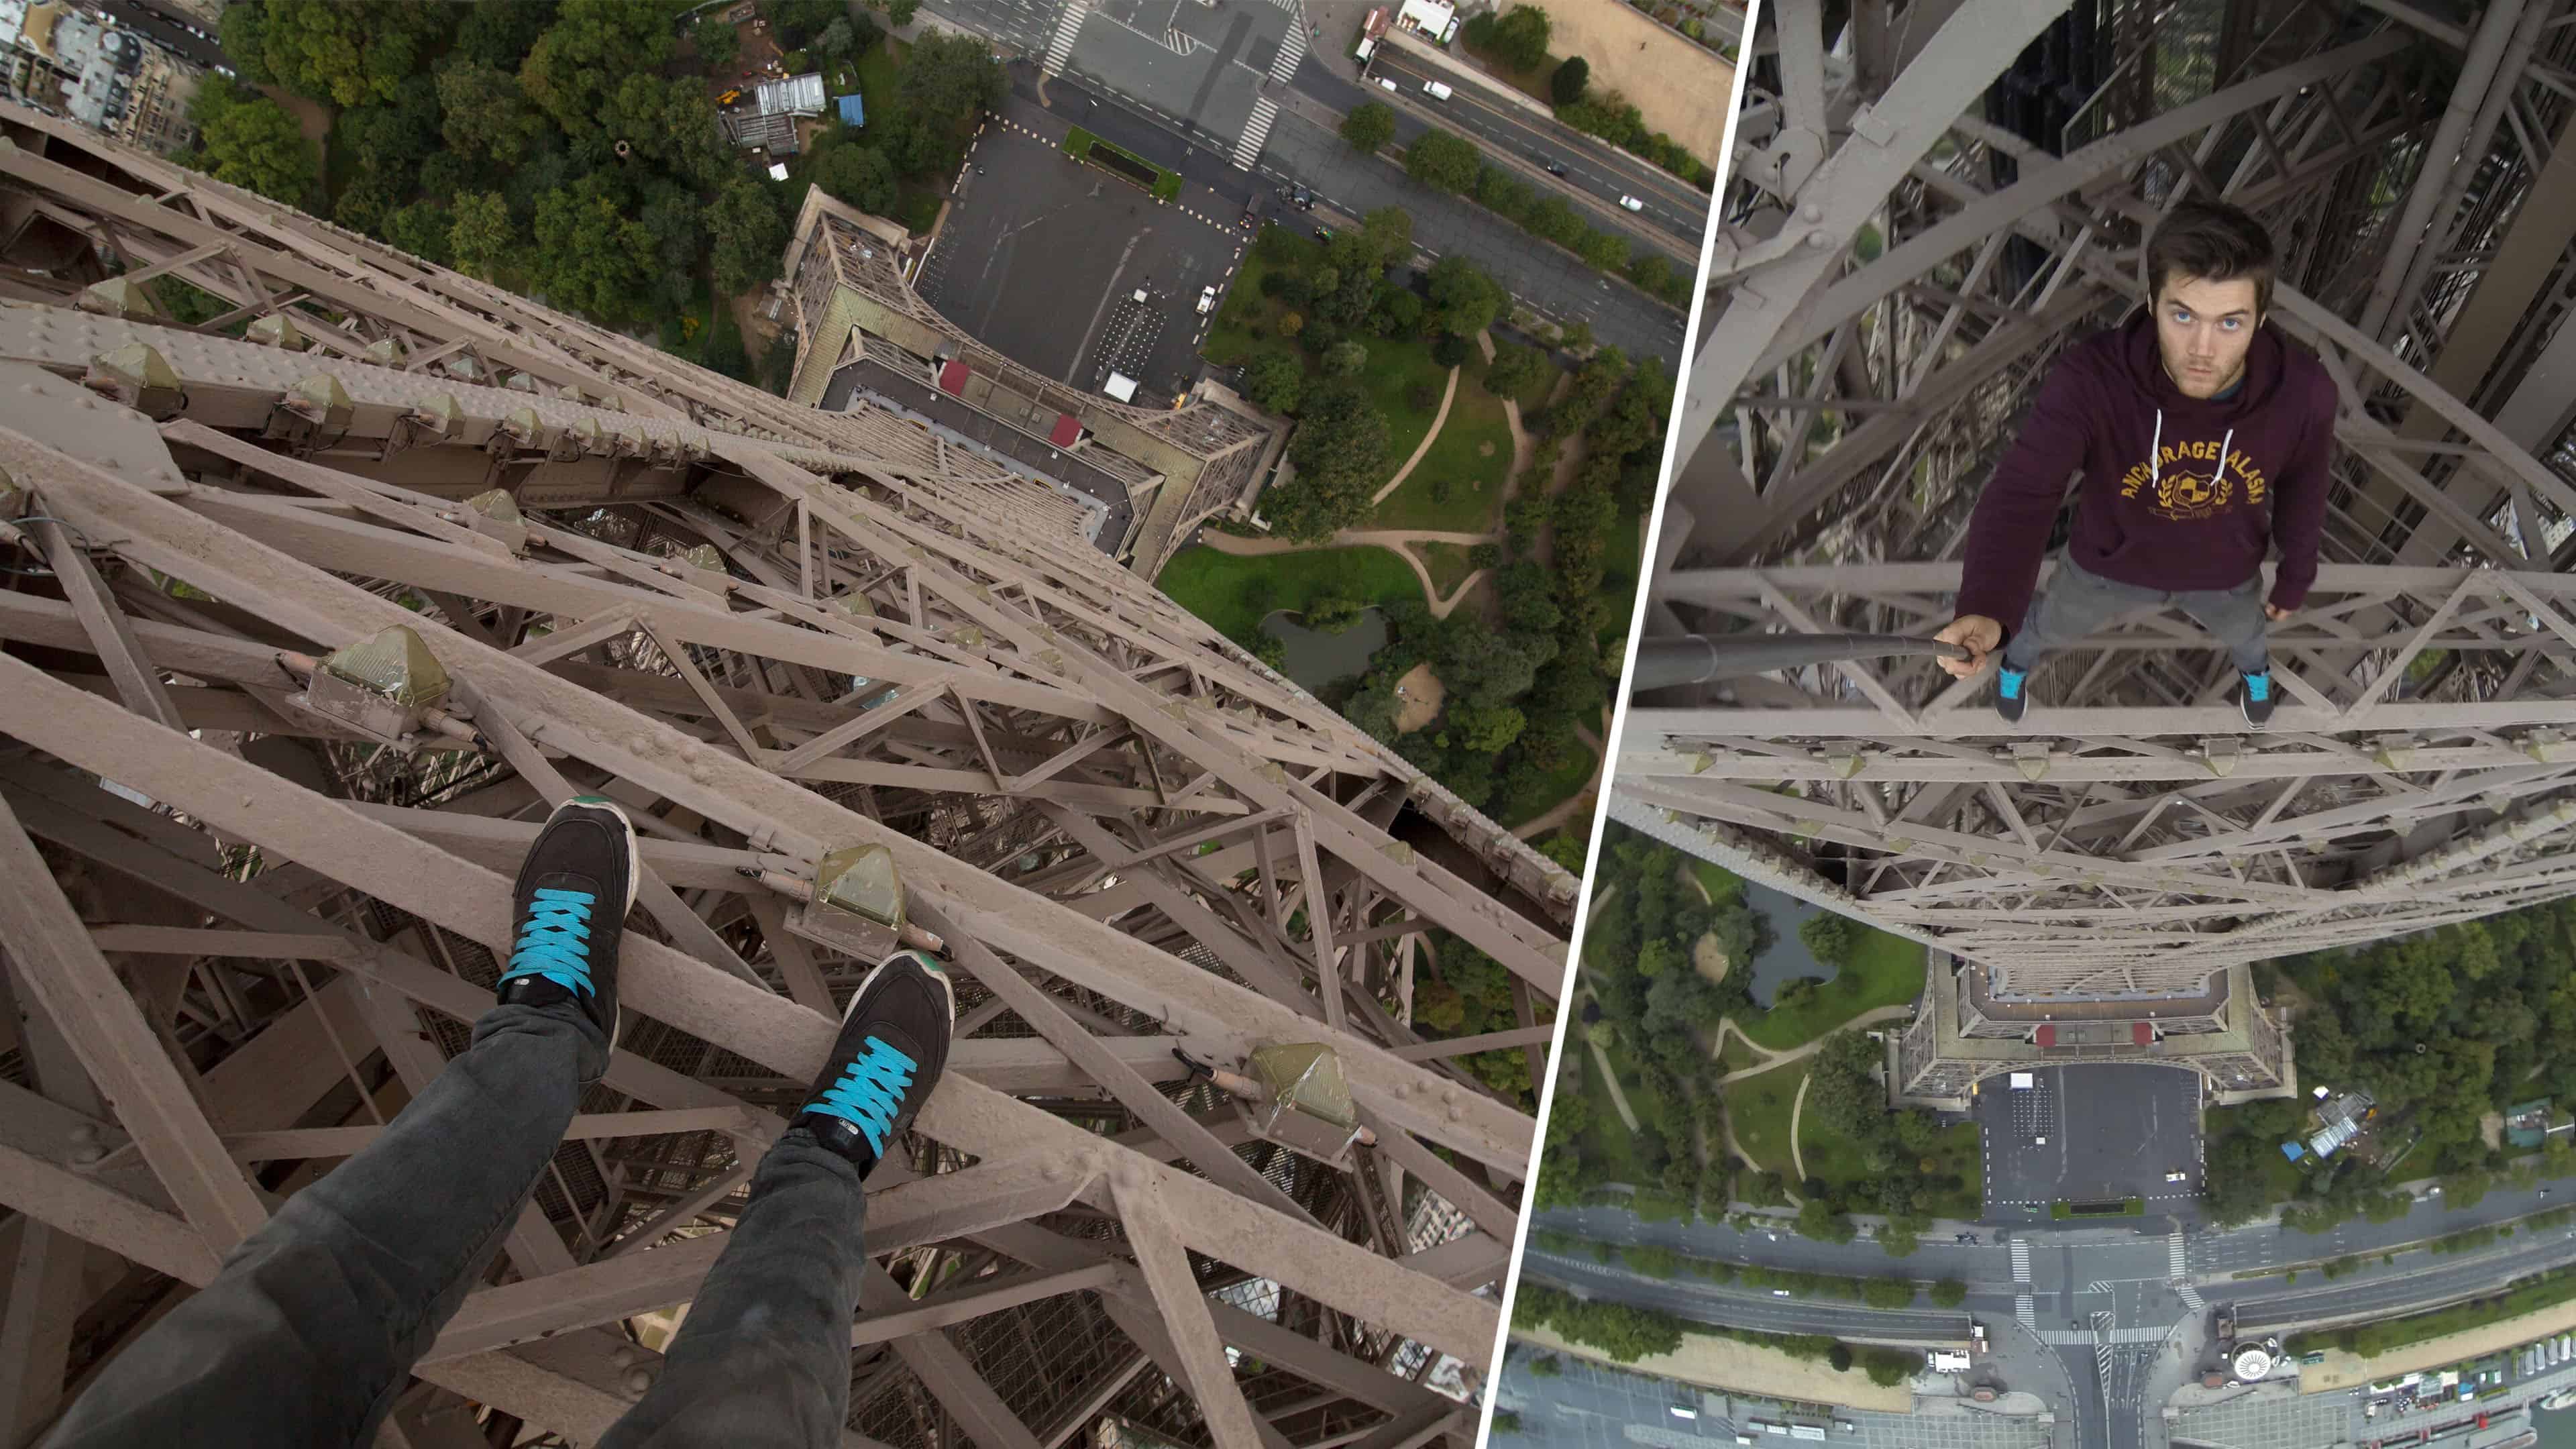 Att klättra upp i Eiffeltornet utan säkerhetsåtgärder